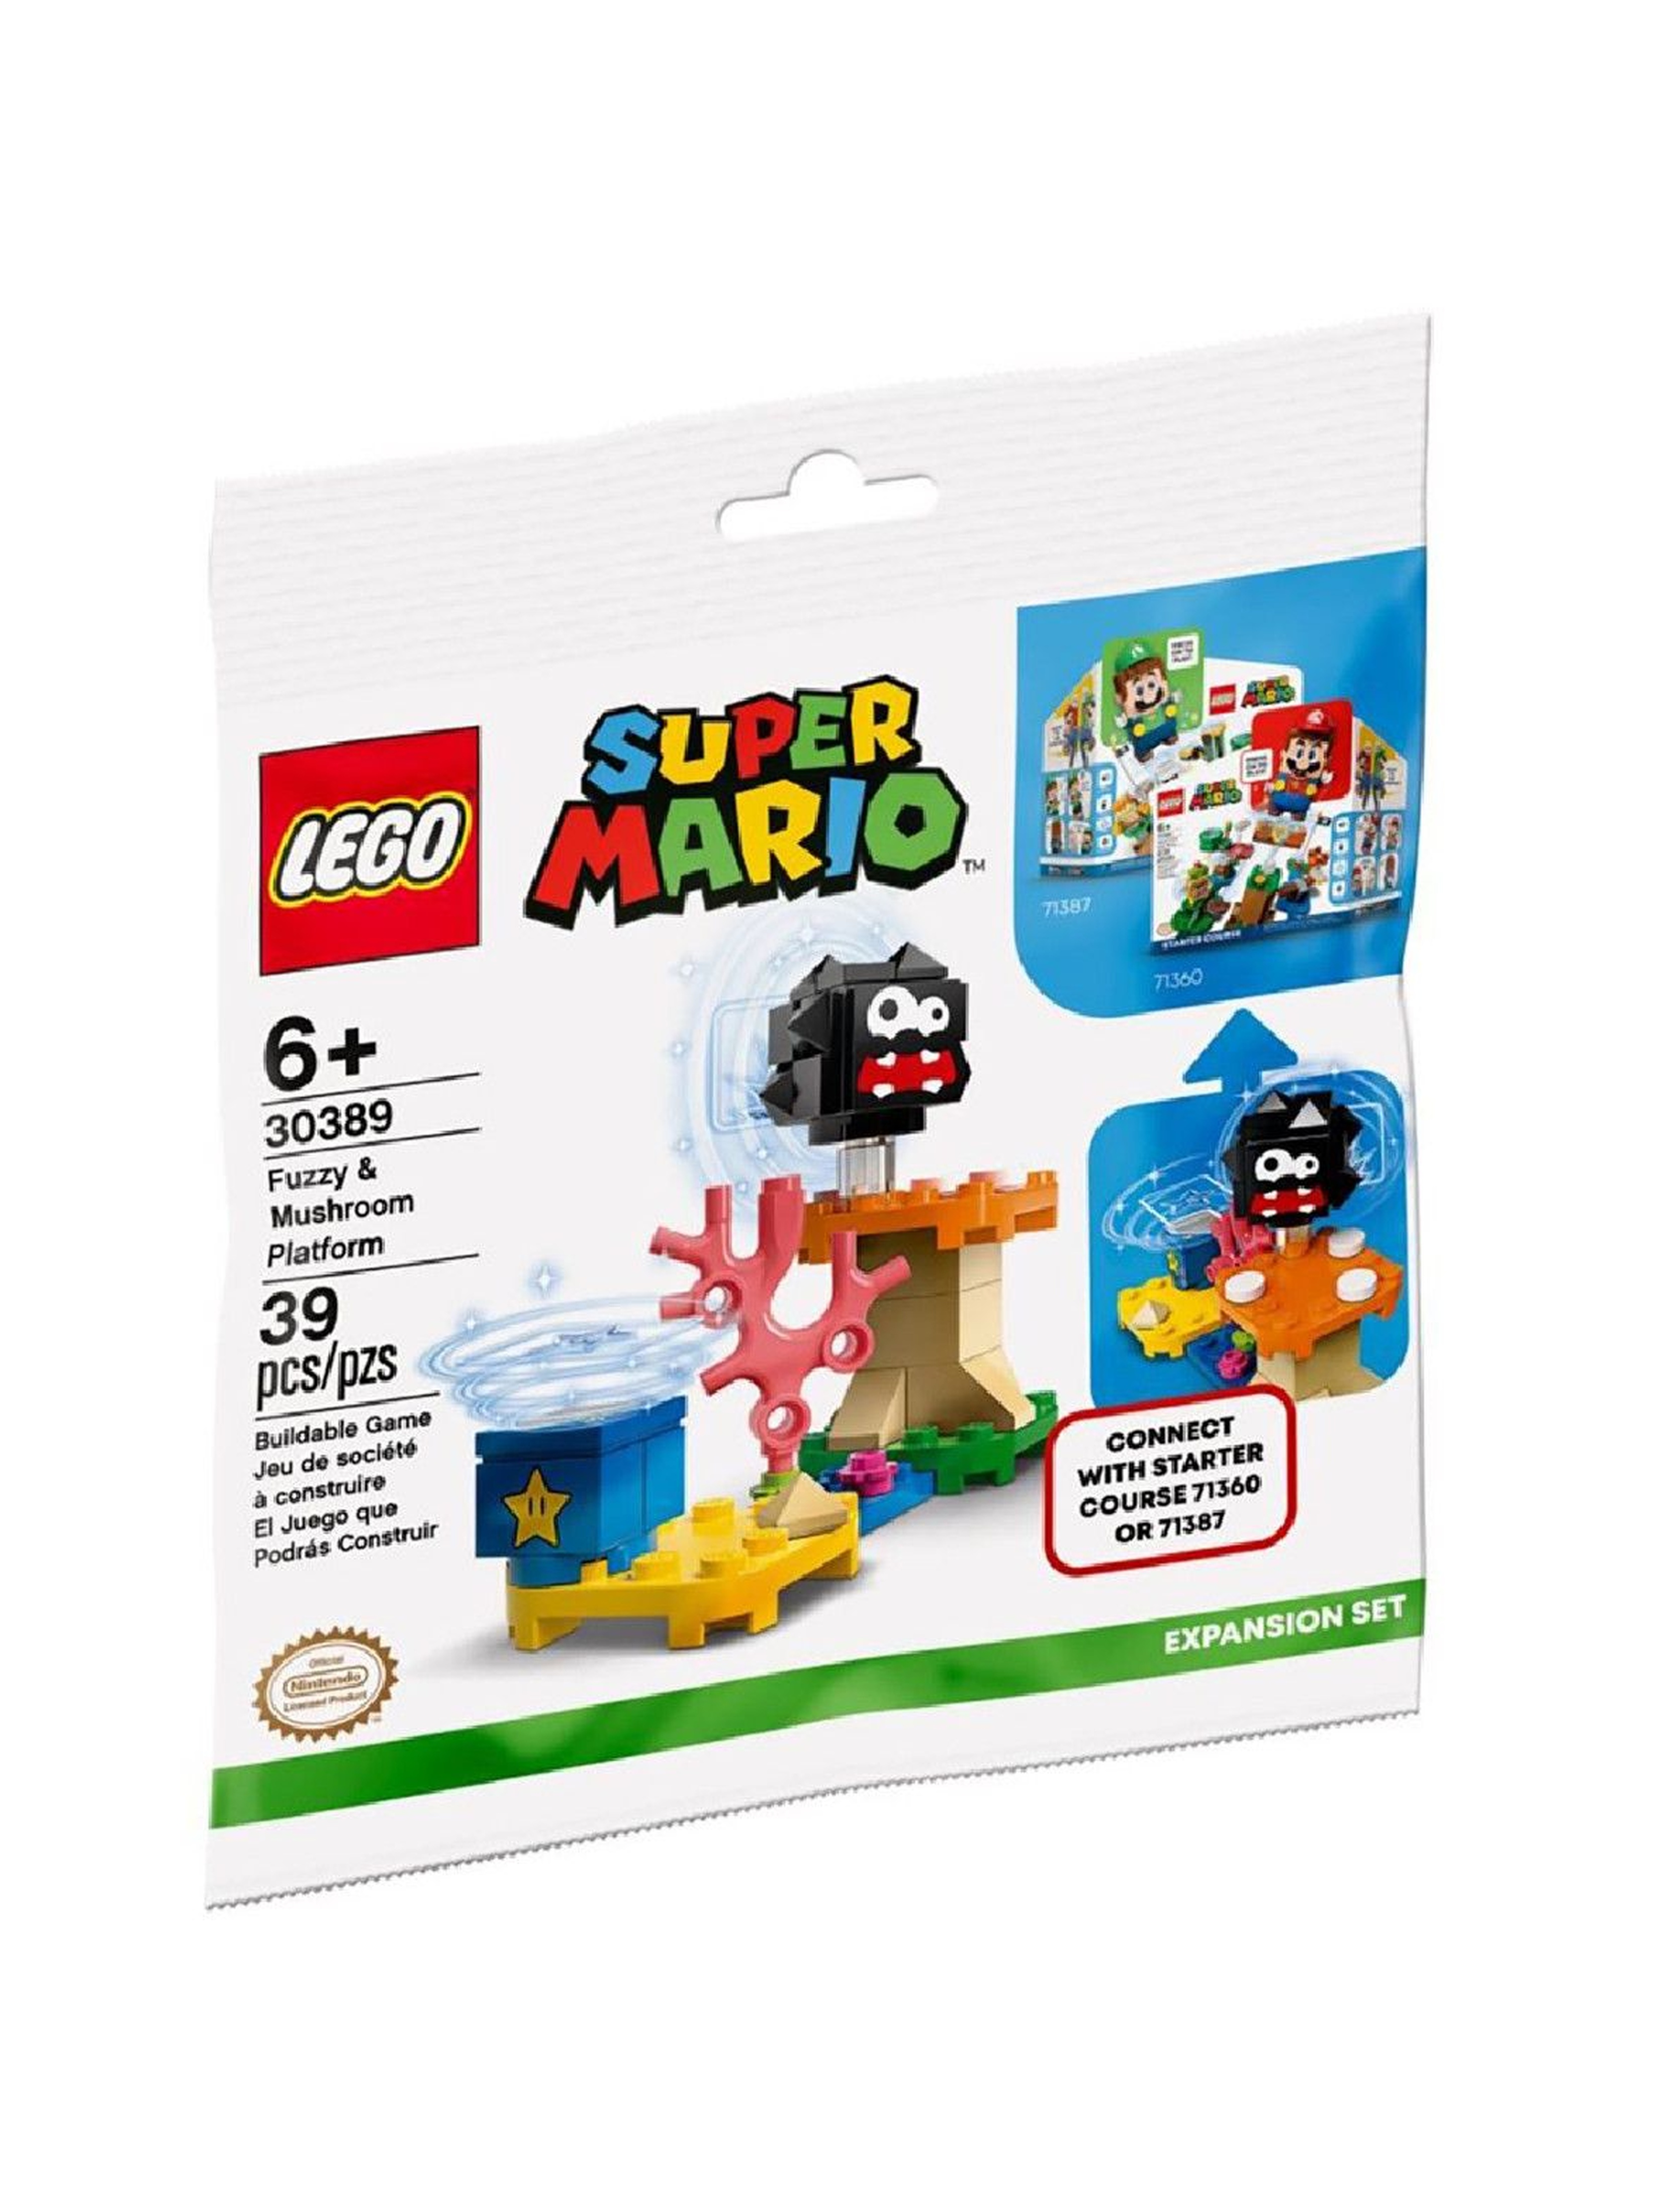 LEGO Super Mario 30389 Fuzzy i platforma z grzybem 39el wiek 6+